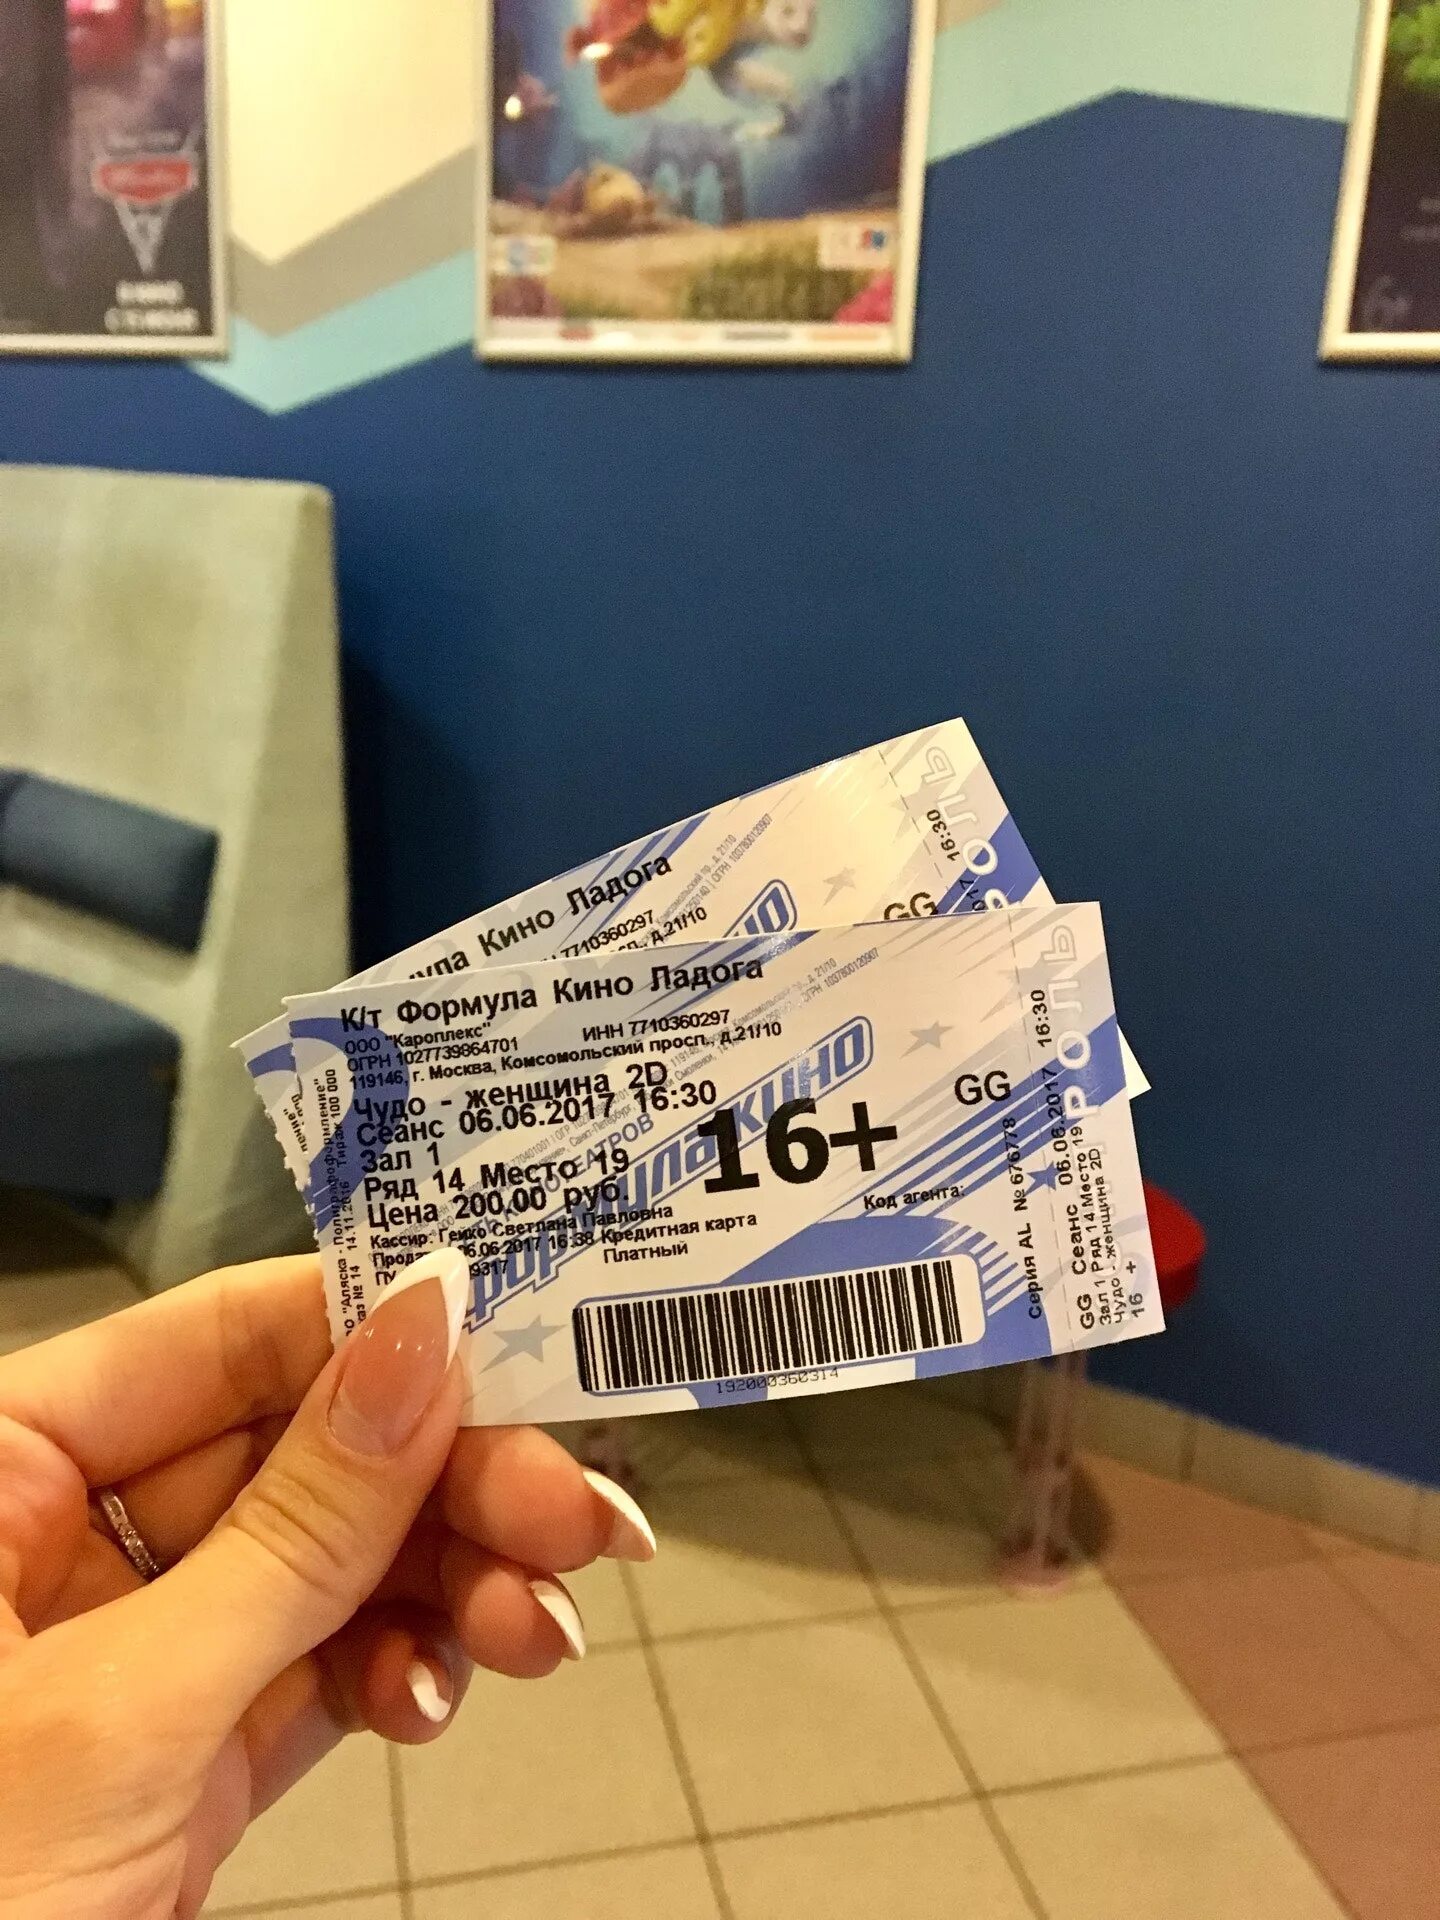 Кинотеатры билеты острова. Билет в кинотеатр. Билеты из кинотеатра.